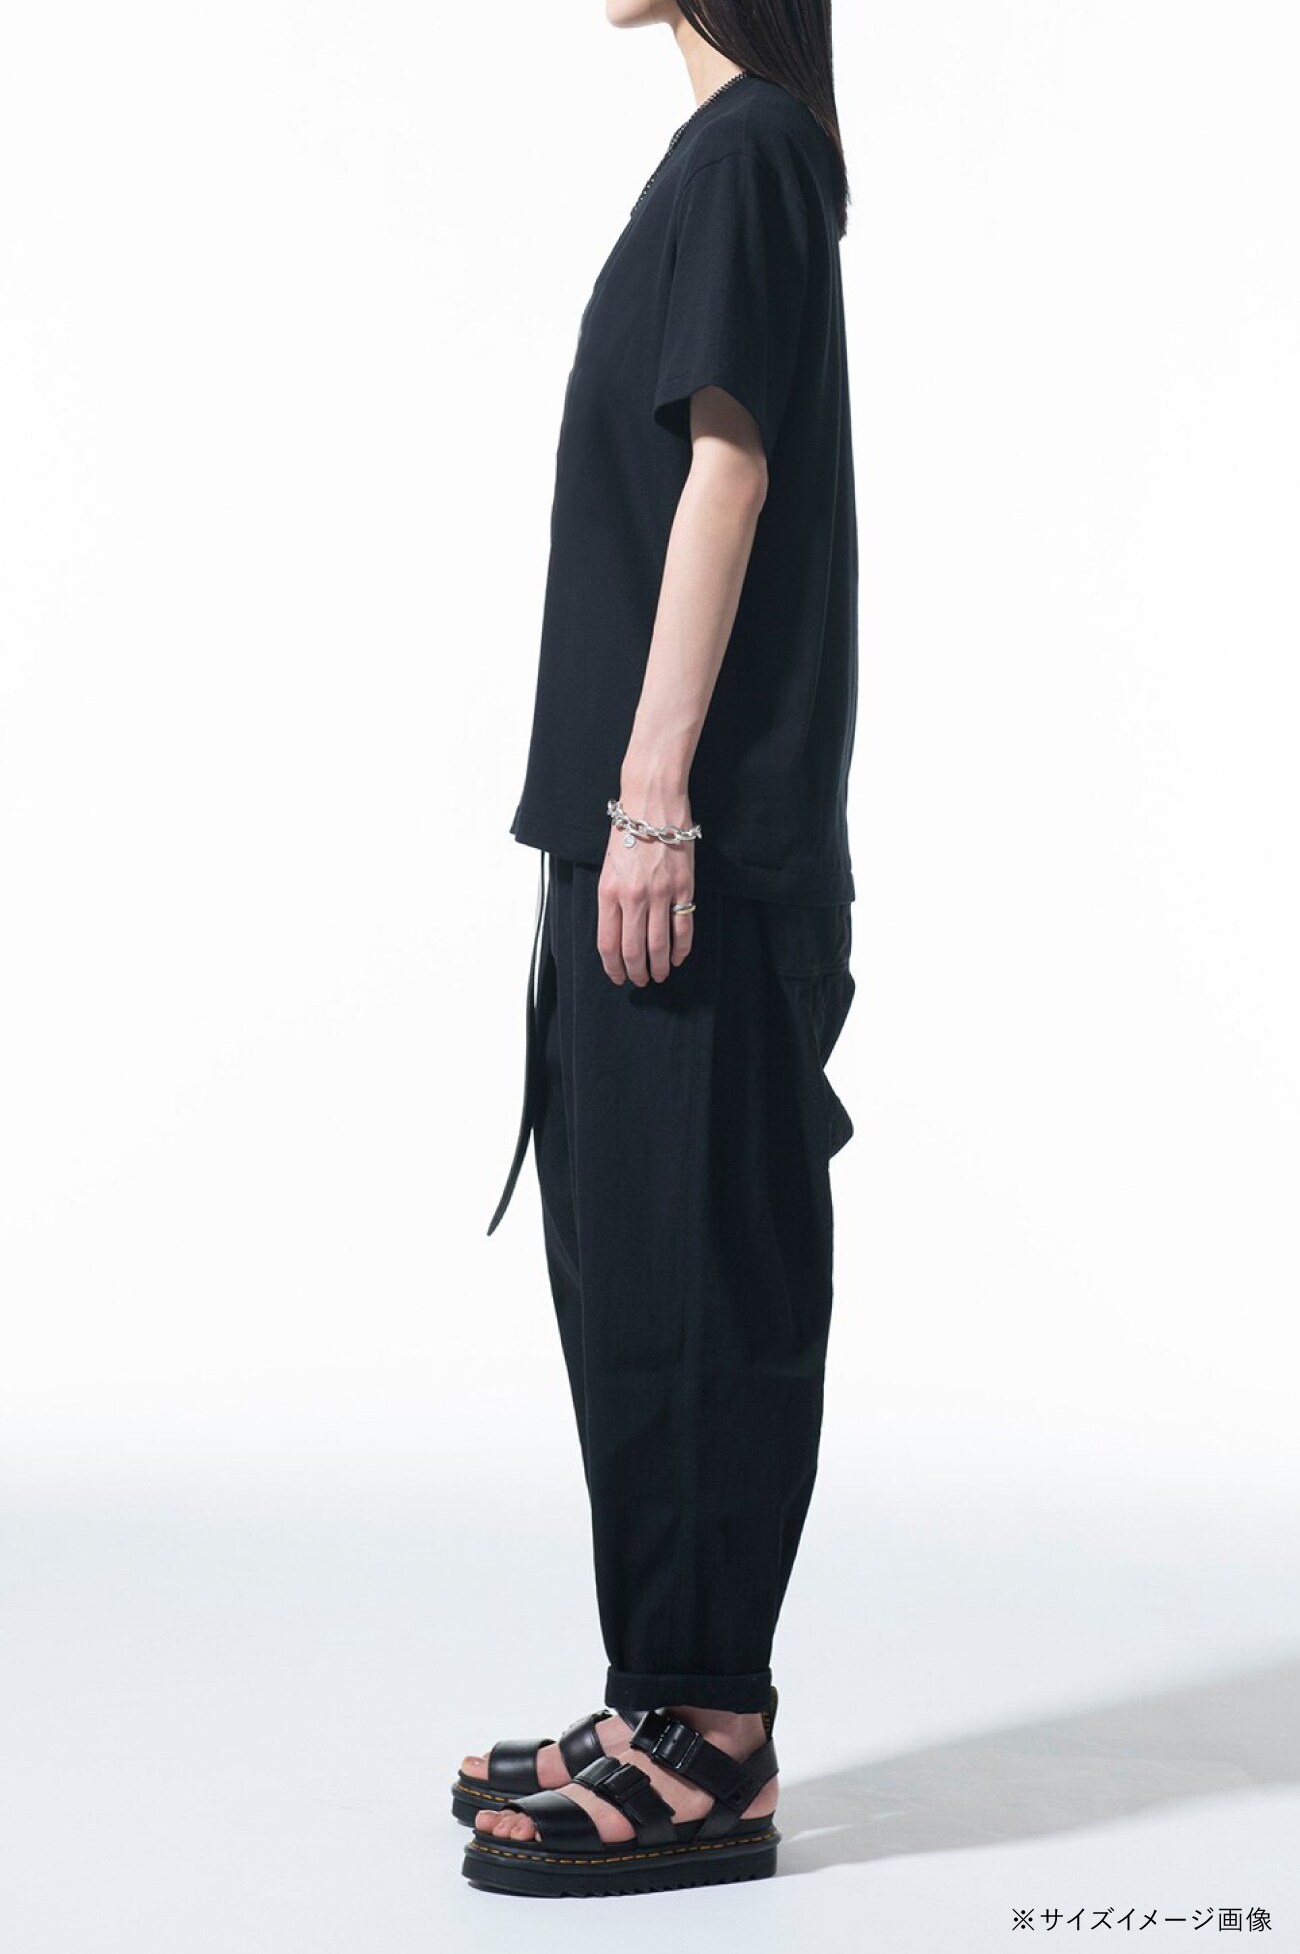 "Tomie" Wearing Yohji Yamamoto Lace-up Dress T-shirt